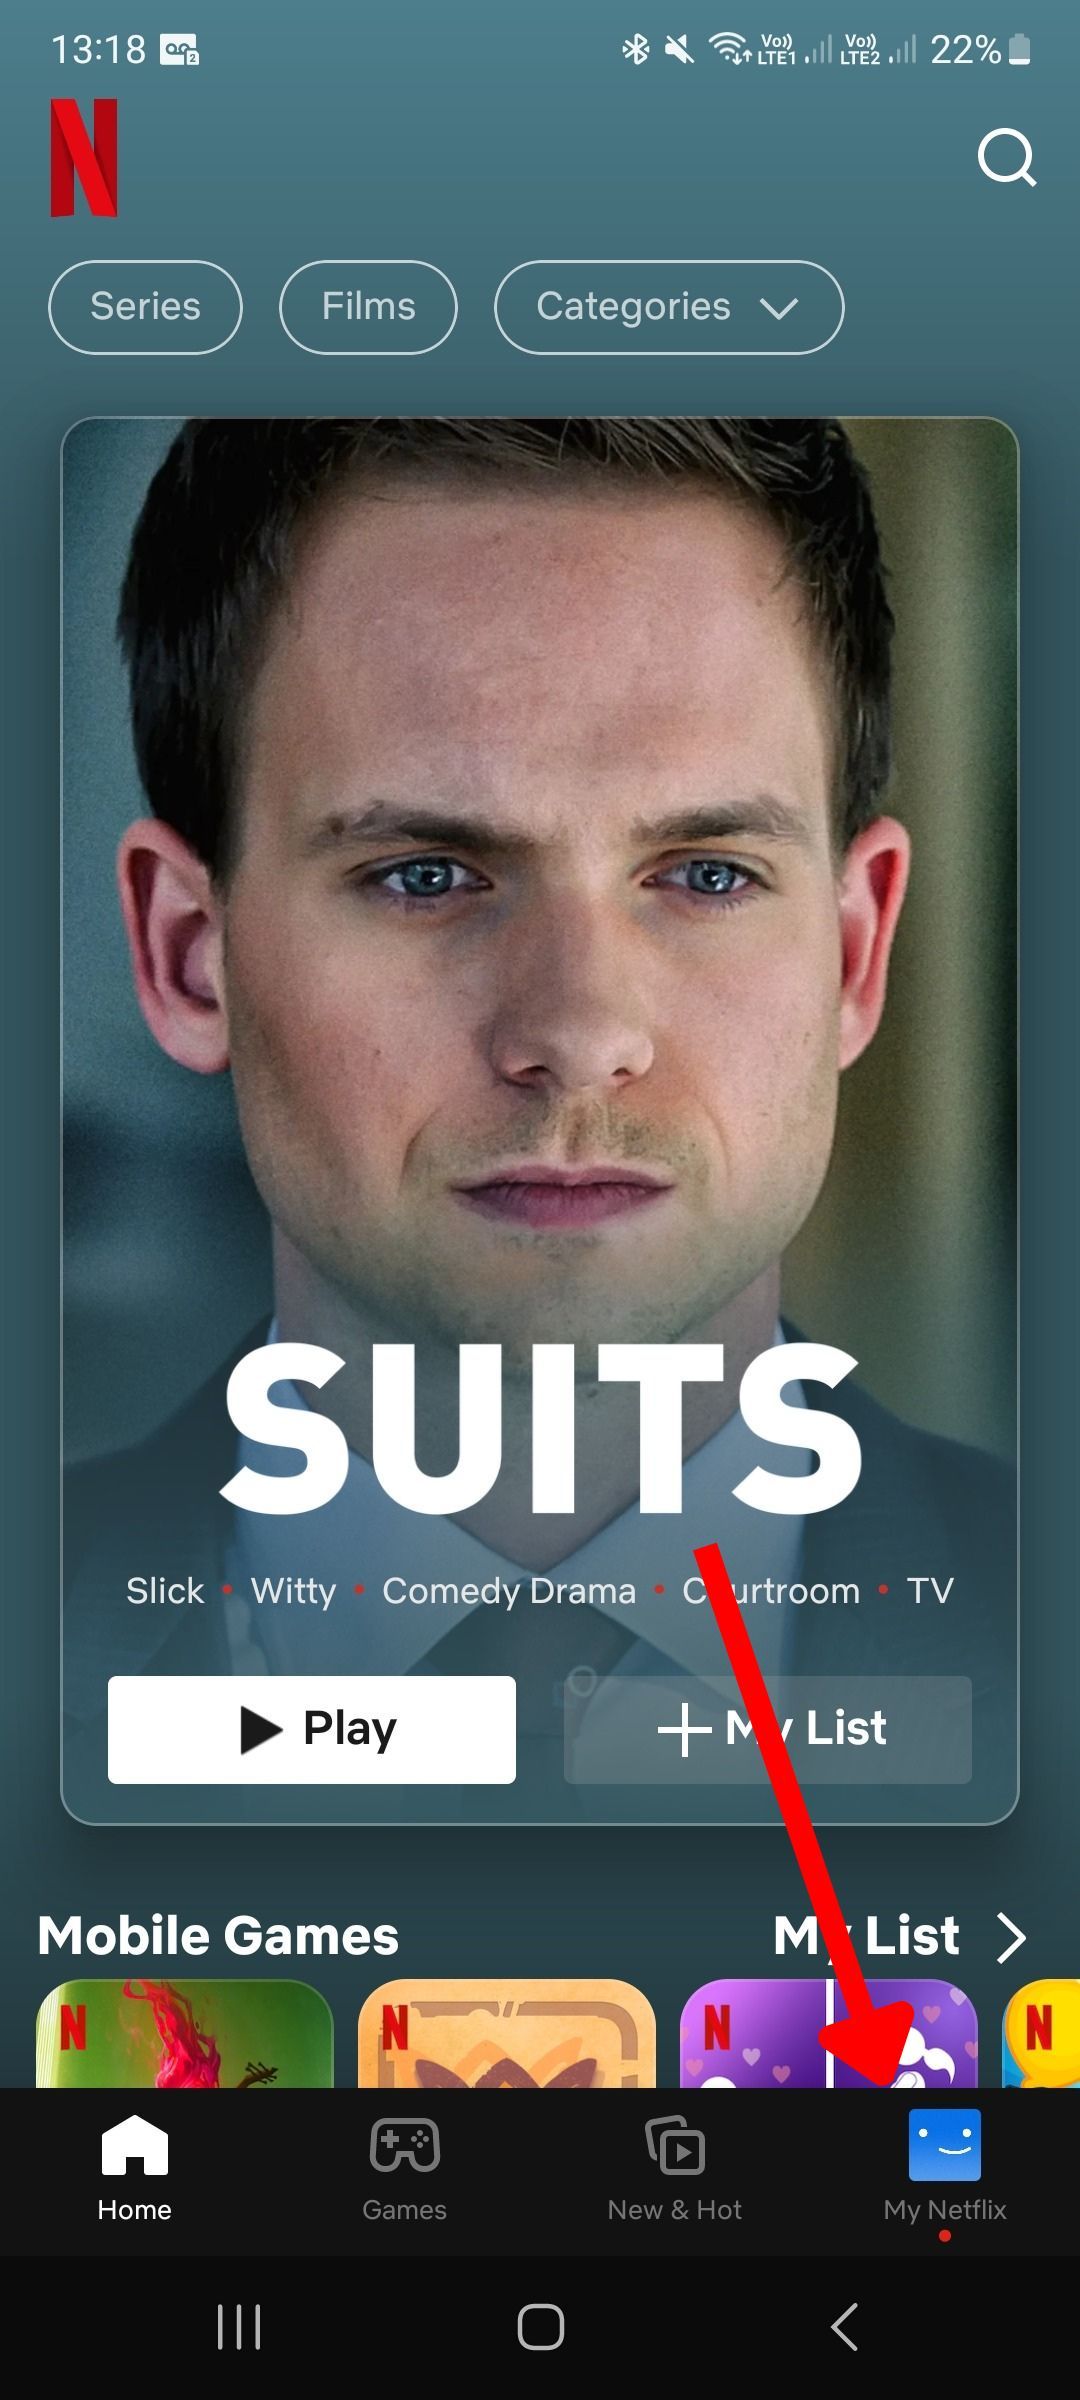 Captura de tela do aplicativo móvel Netflix com uma seta apontando para o ícone do perfil na tela inicial 